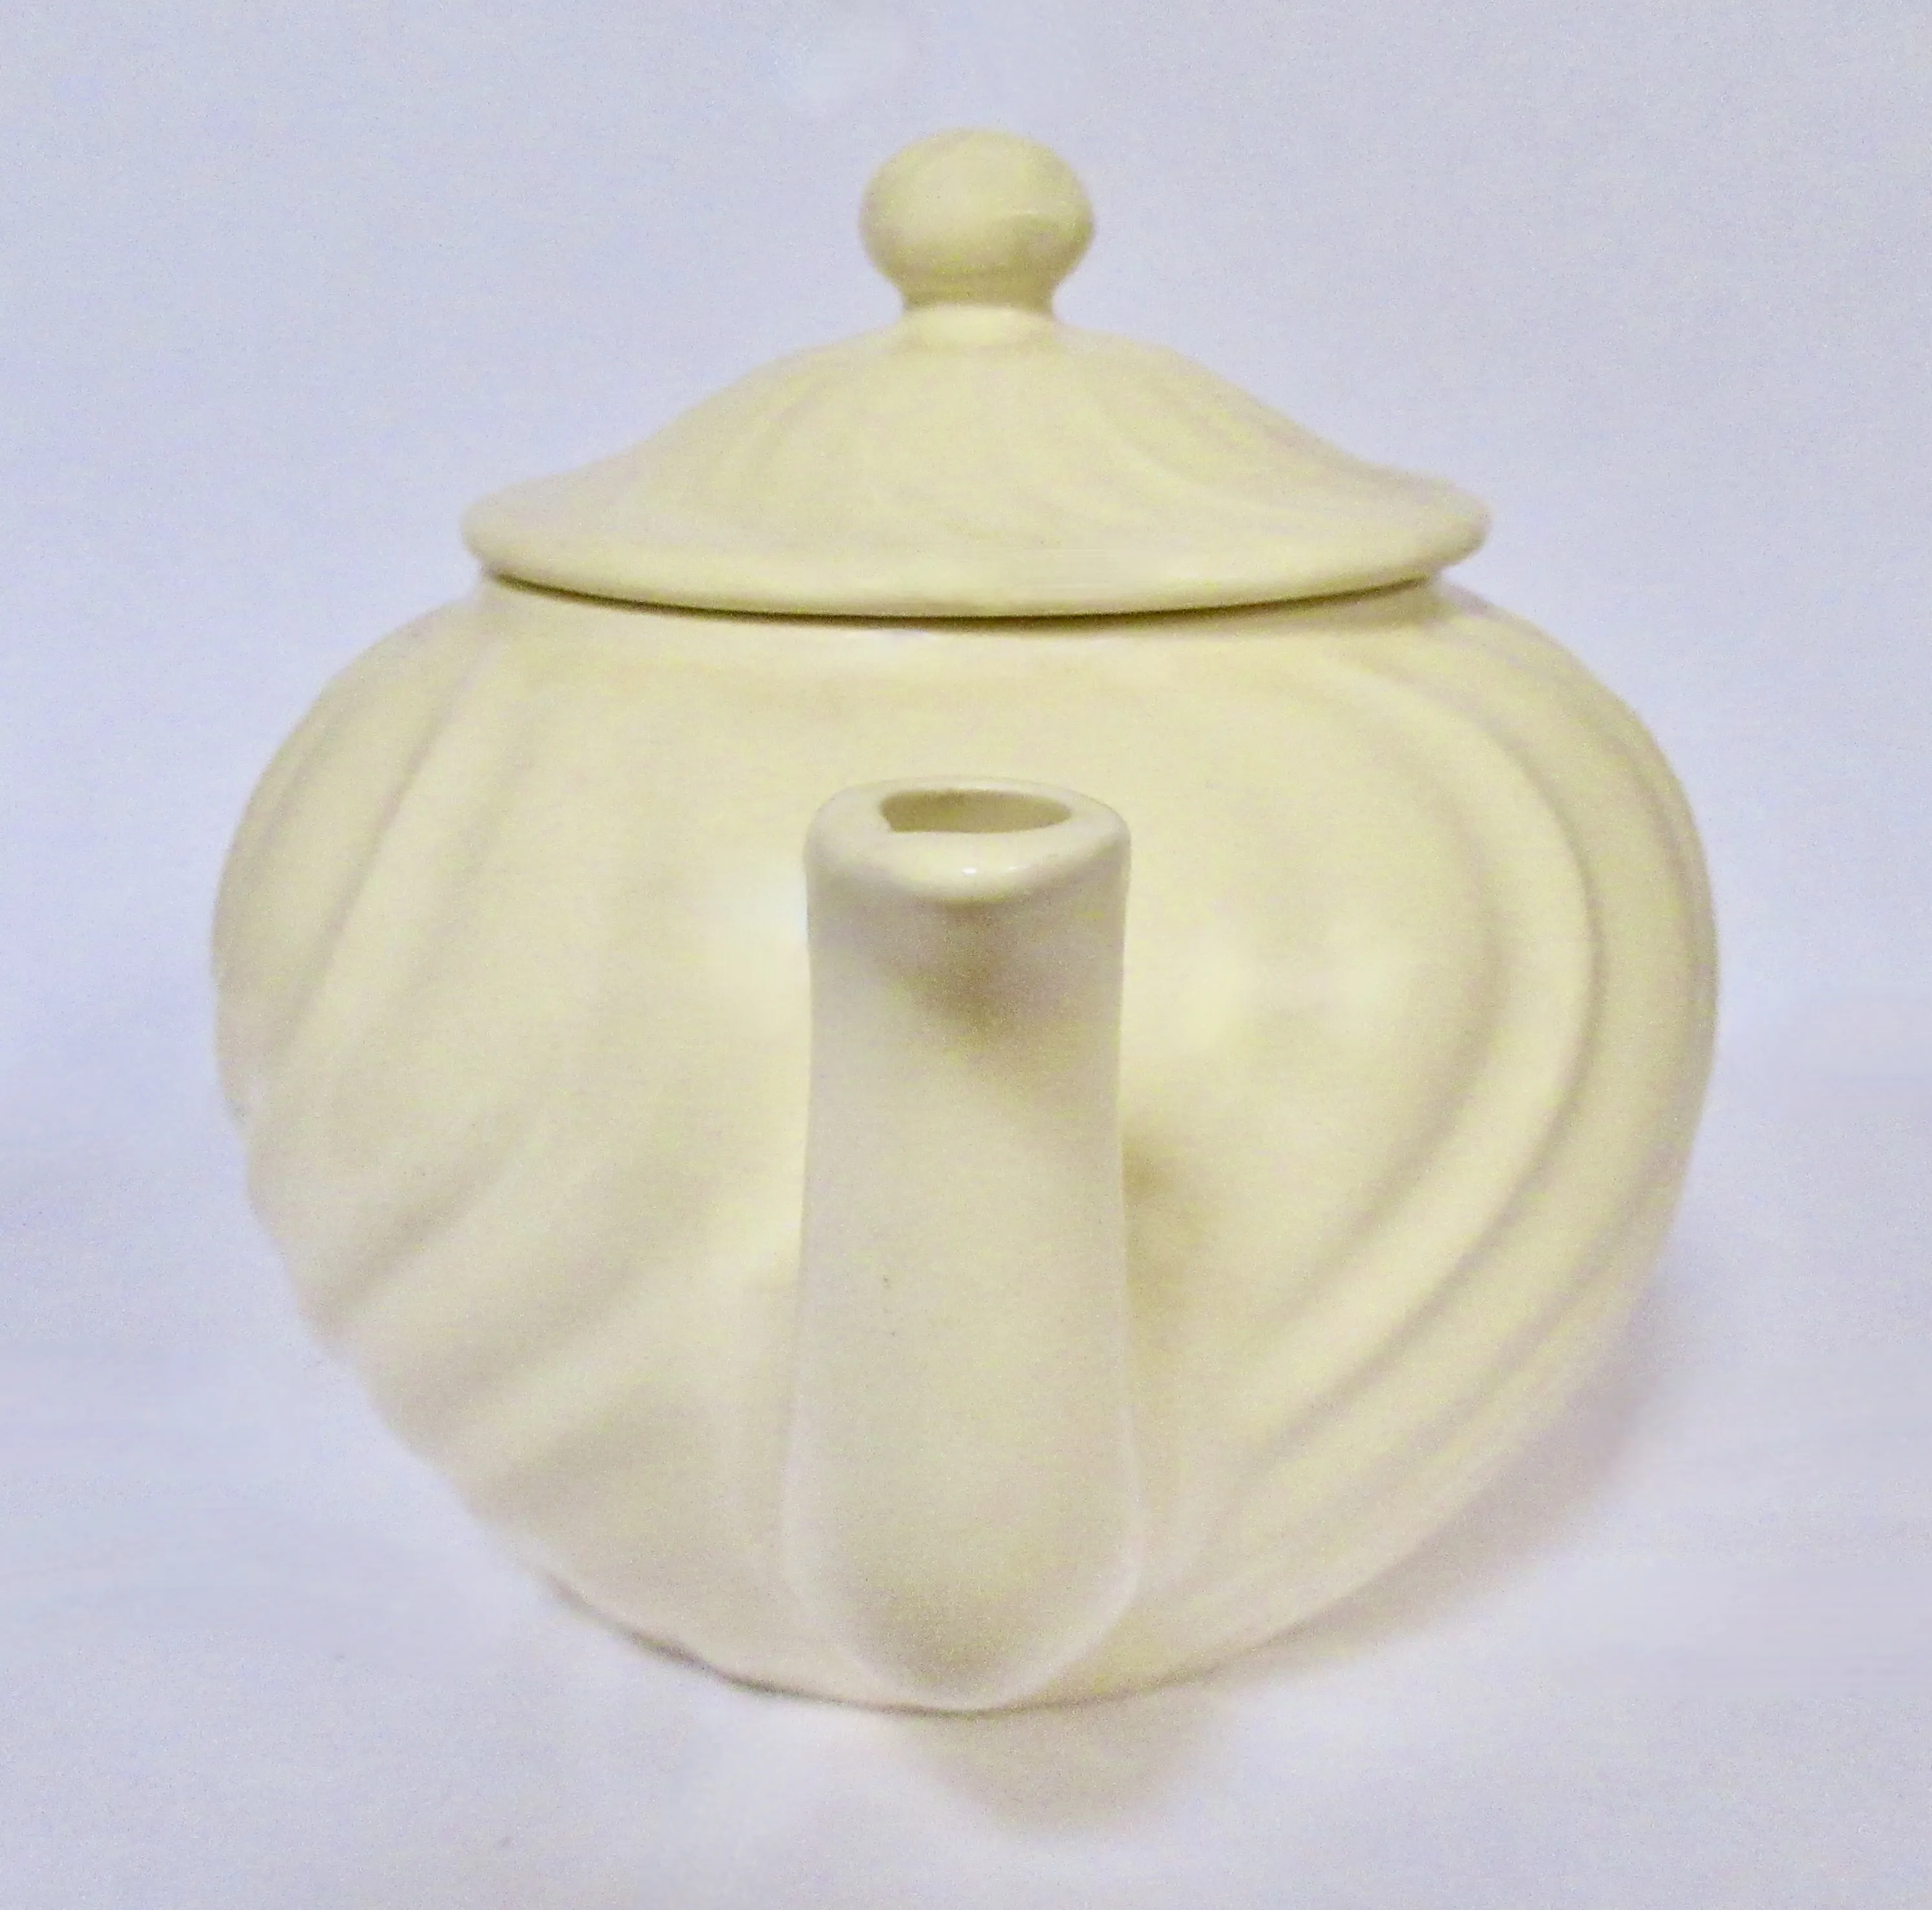 1940s Gladding McBean Swirl Teapot - The Emporium Ltd. - White